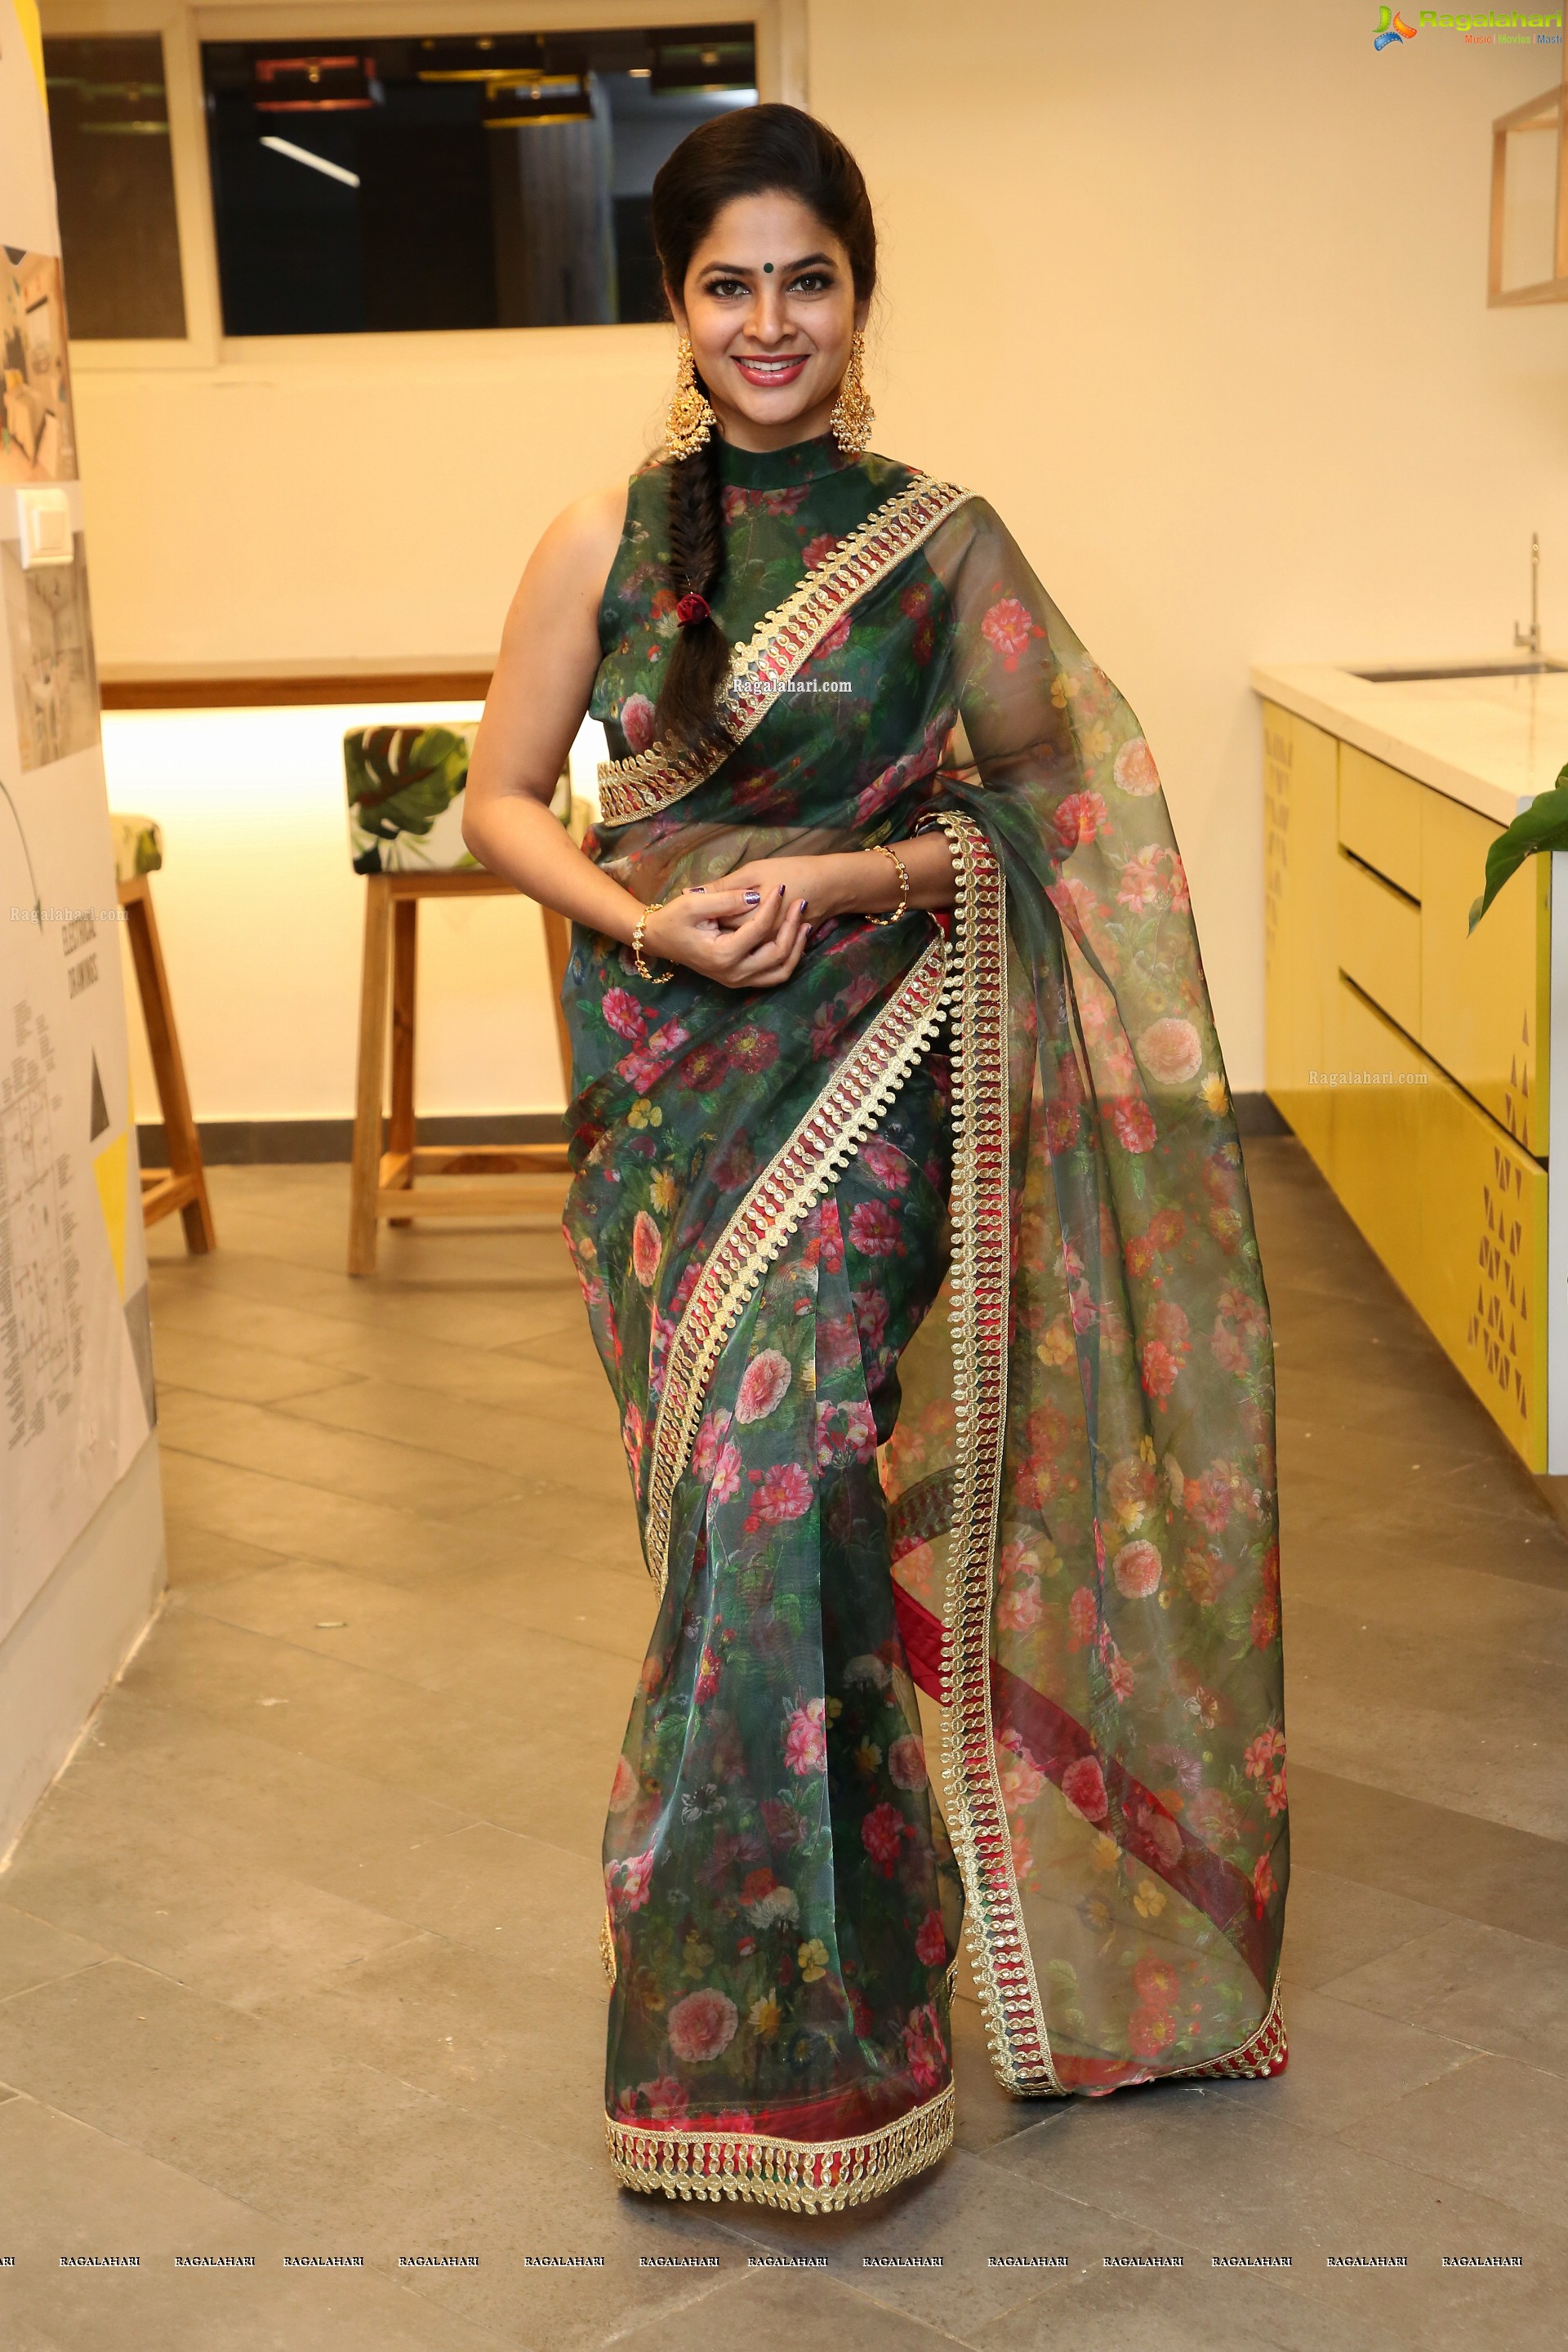 Madhumitha Sivabalaji at Tathasthu - For Living Solutions Launch at Kokapet